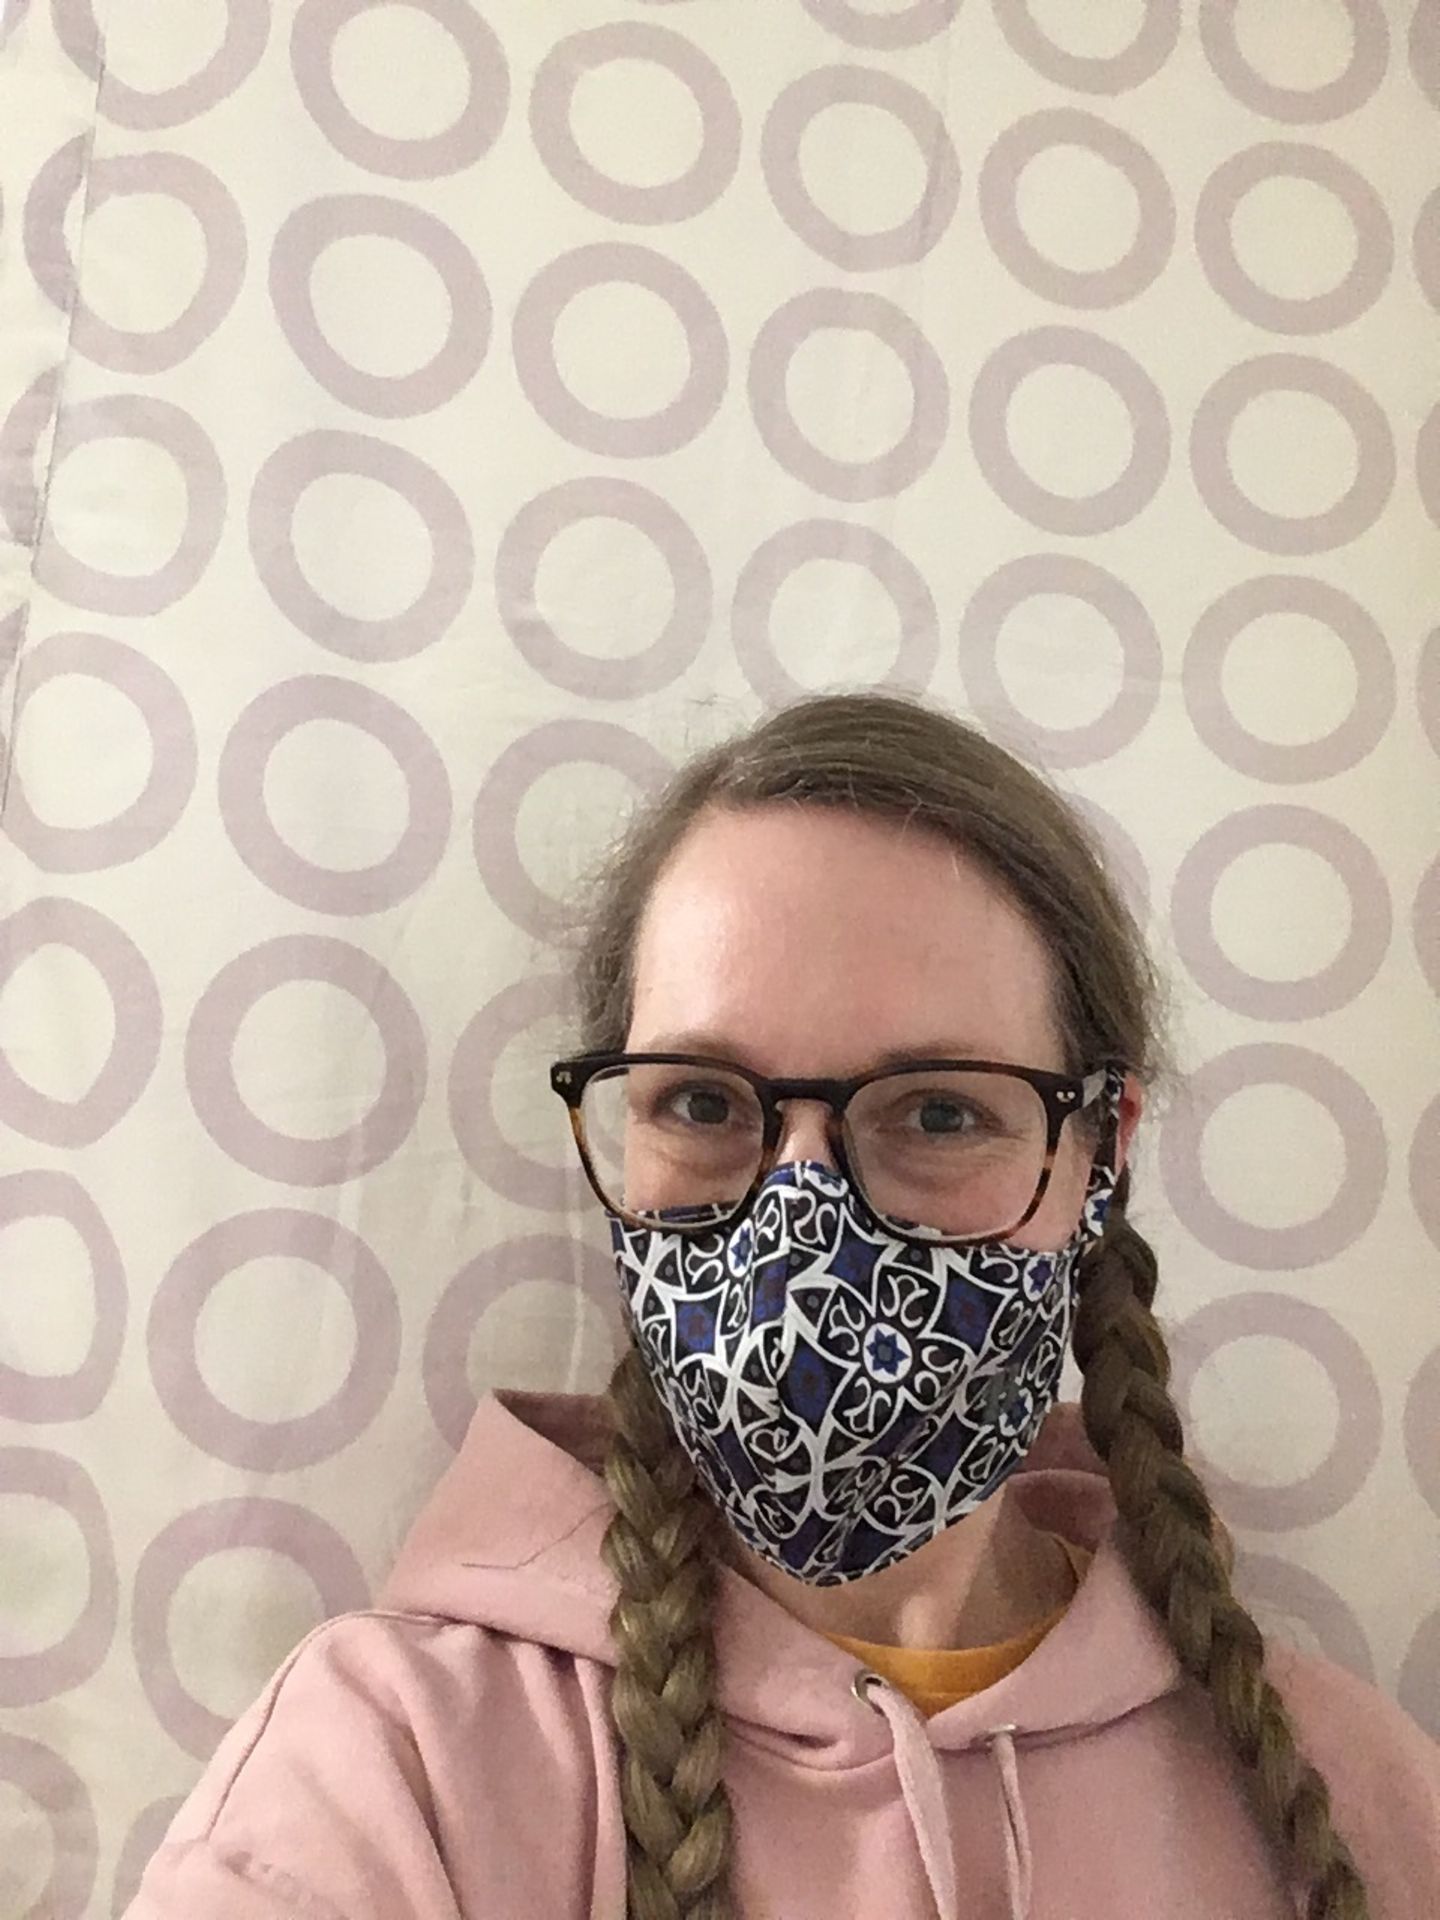 "Ein Schutz fürs Leben": Frau mit Maske